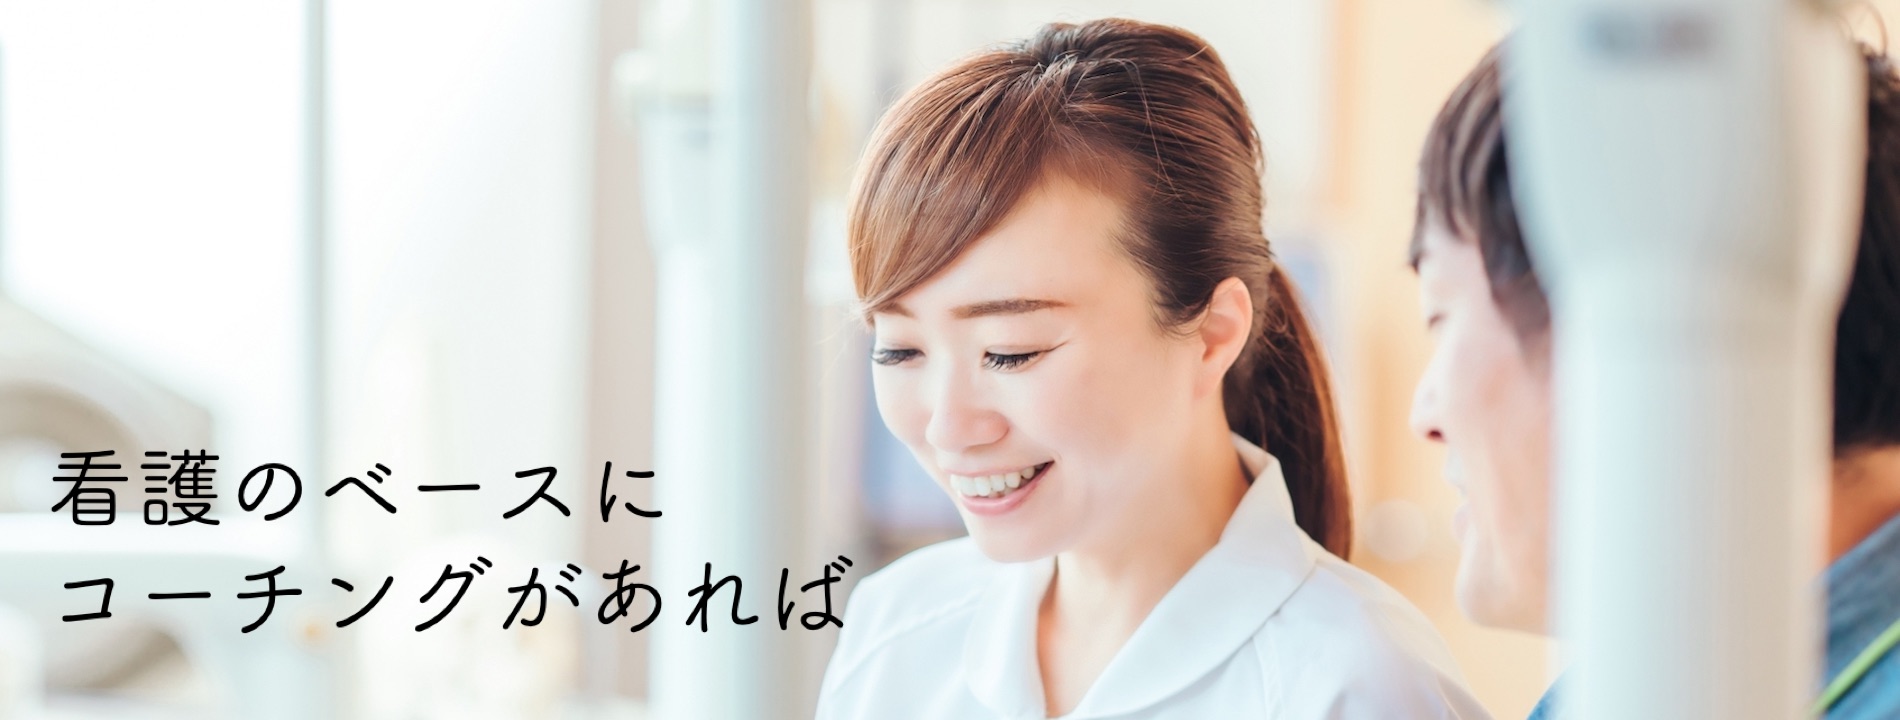 一般社団法人日本看護コーチ協会 看護の世界にコーチングを広め コーチングのできるリーダー看護師の育成を目指しております